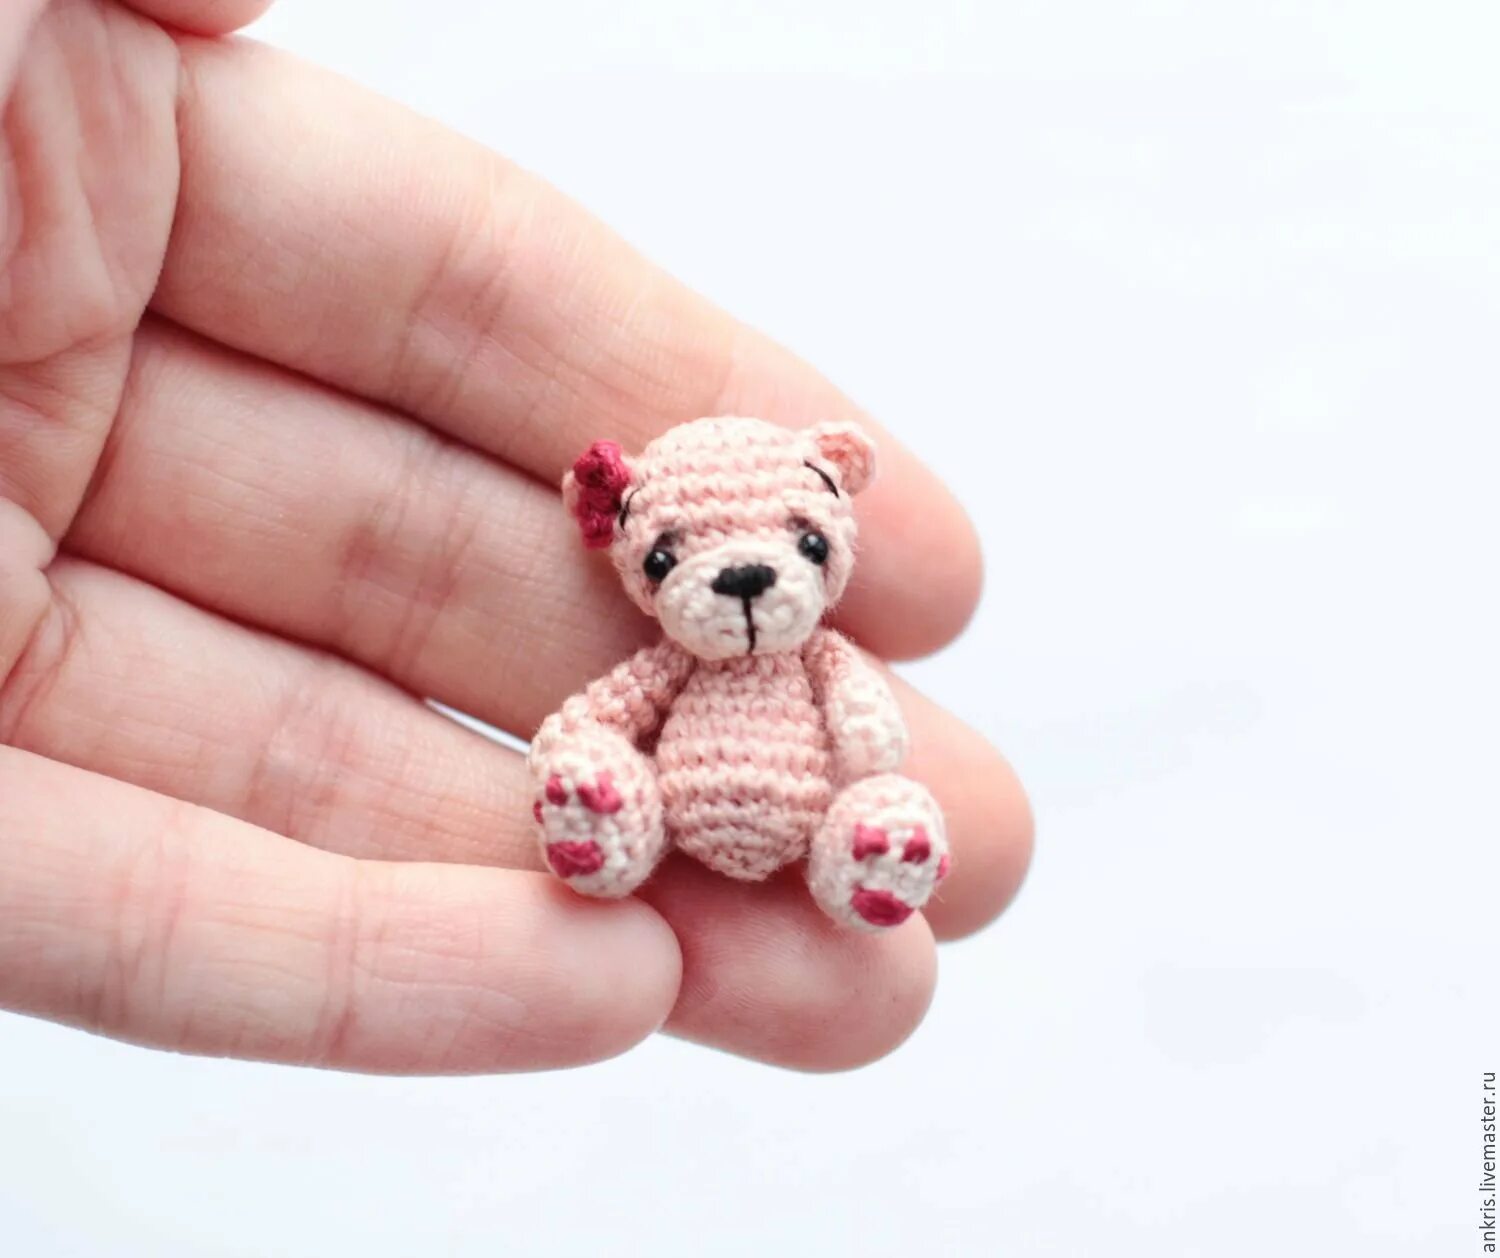 Вязание микро. Mishka Amigurumi мишка. Медведь Карамелька амигуруми. Микровязание амигуруми. Связанные игрушки маленькие.